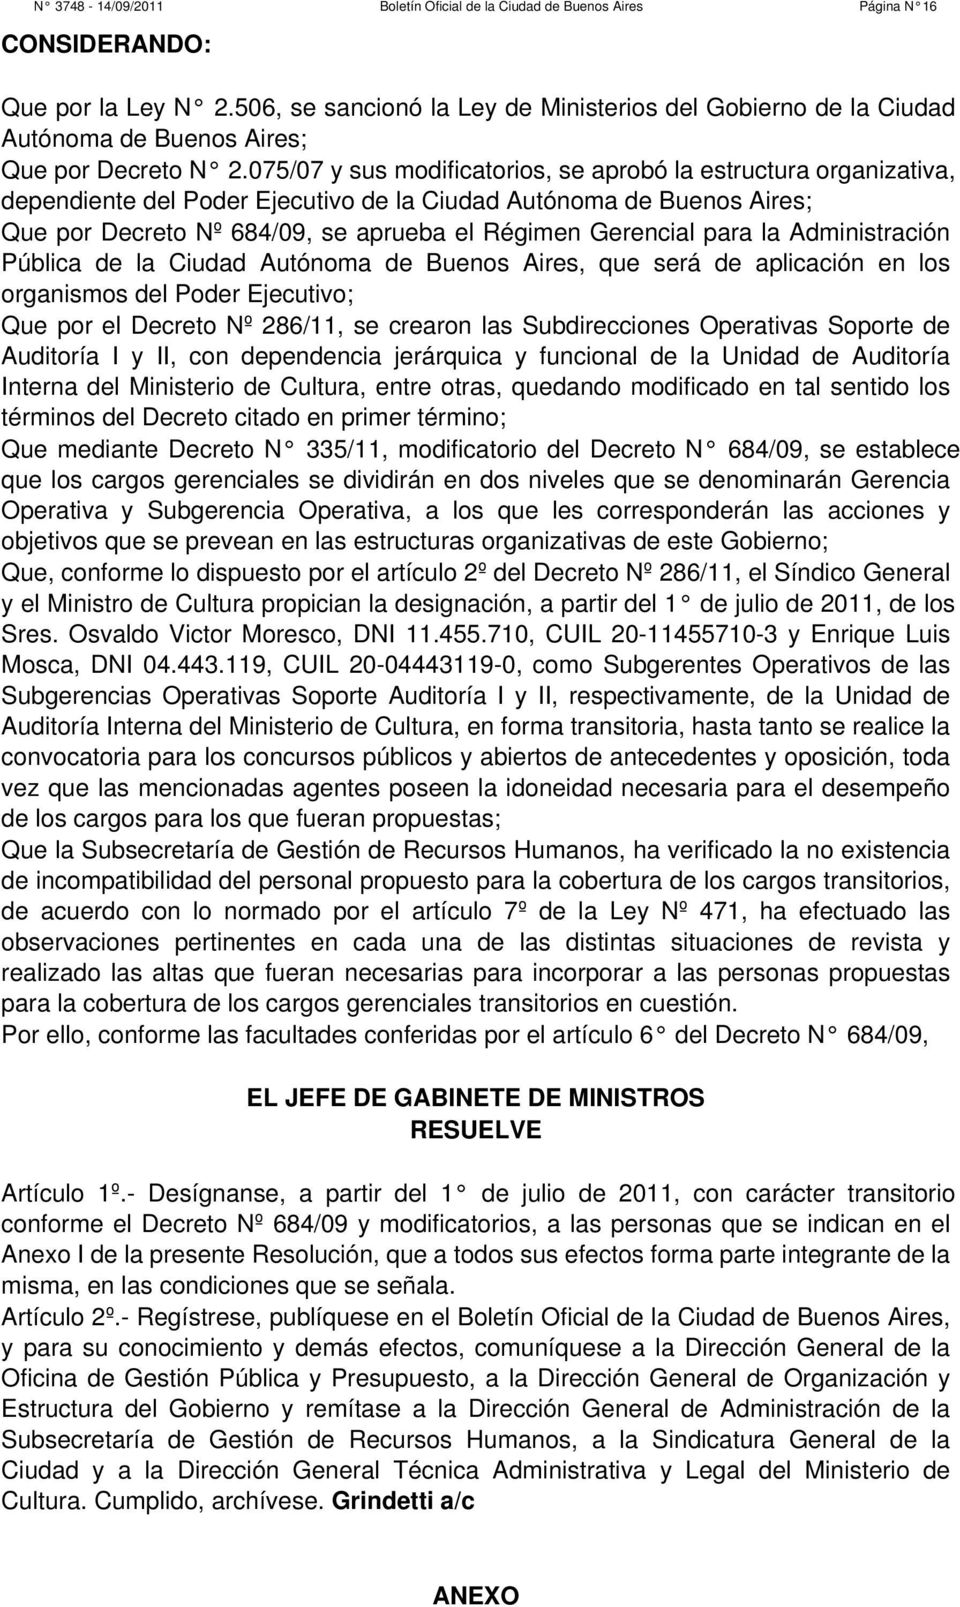 075/07 y sus modificatorios, se aprobó la estructura organizativa, dependiente del Poder Ejecutivo de la Ciudad Autónoma de Buenos Aires; Que por Decreto Nº 684/09, se aprueba el Régimen Gerencial